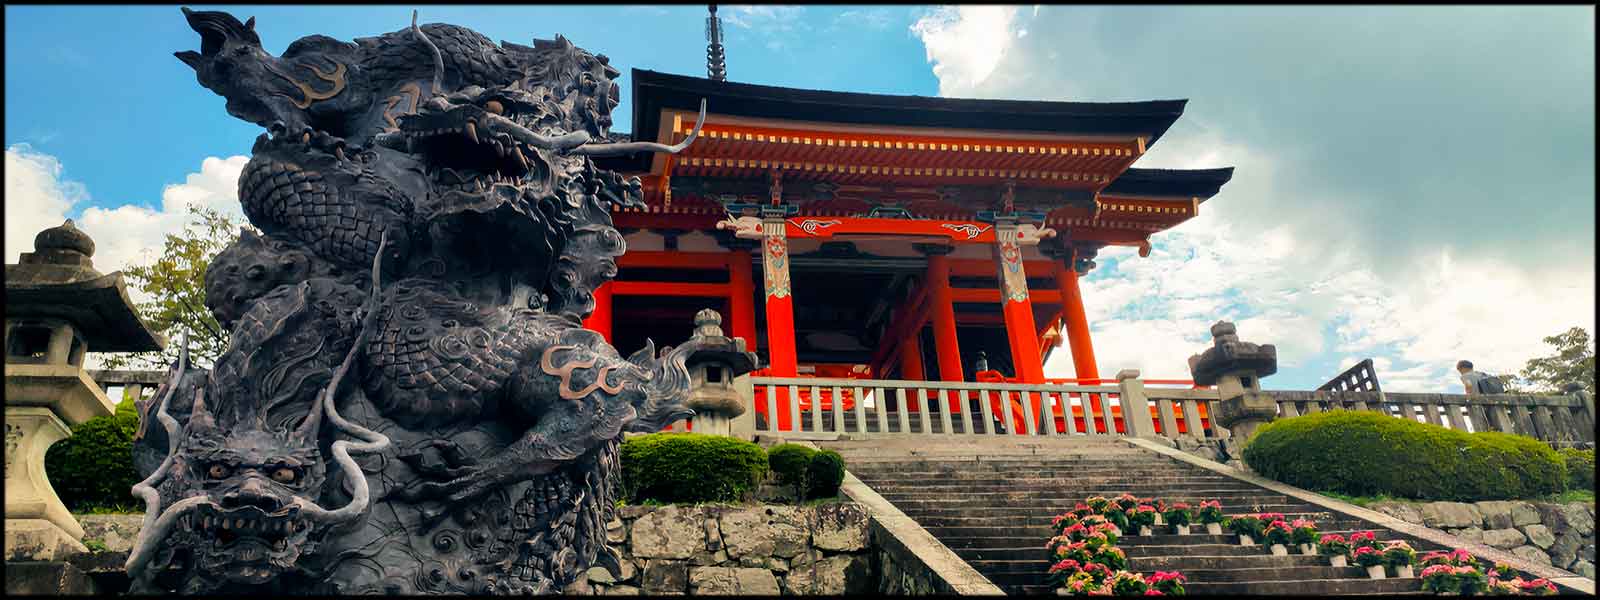 Statue dragon japonais temple Kyoto